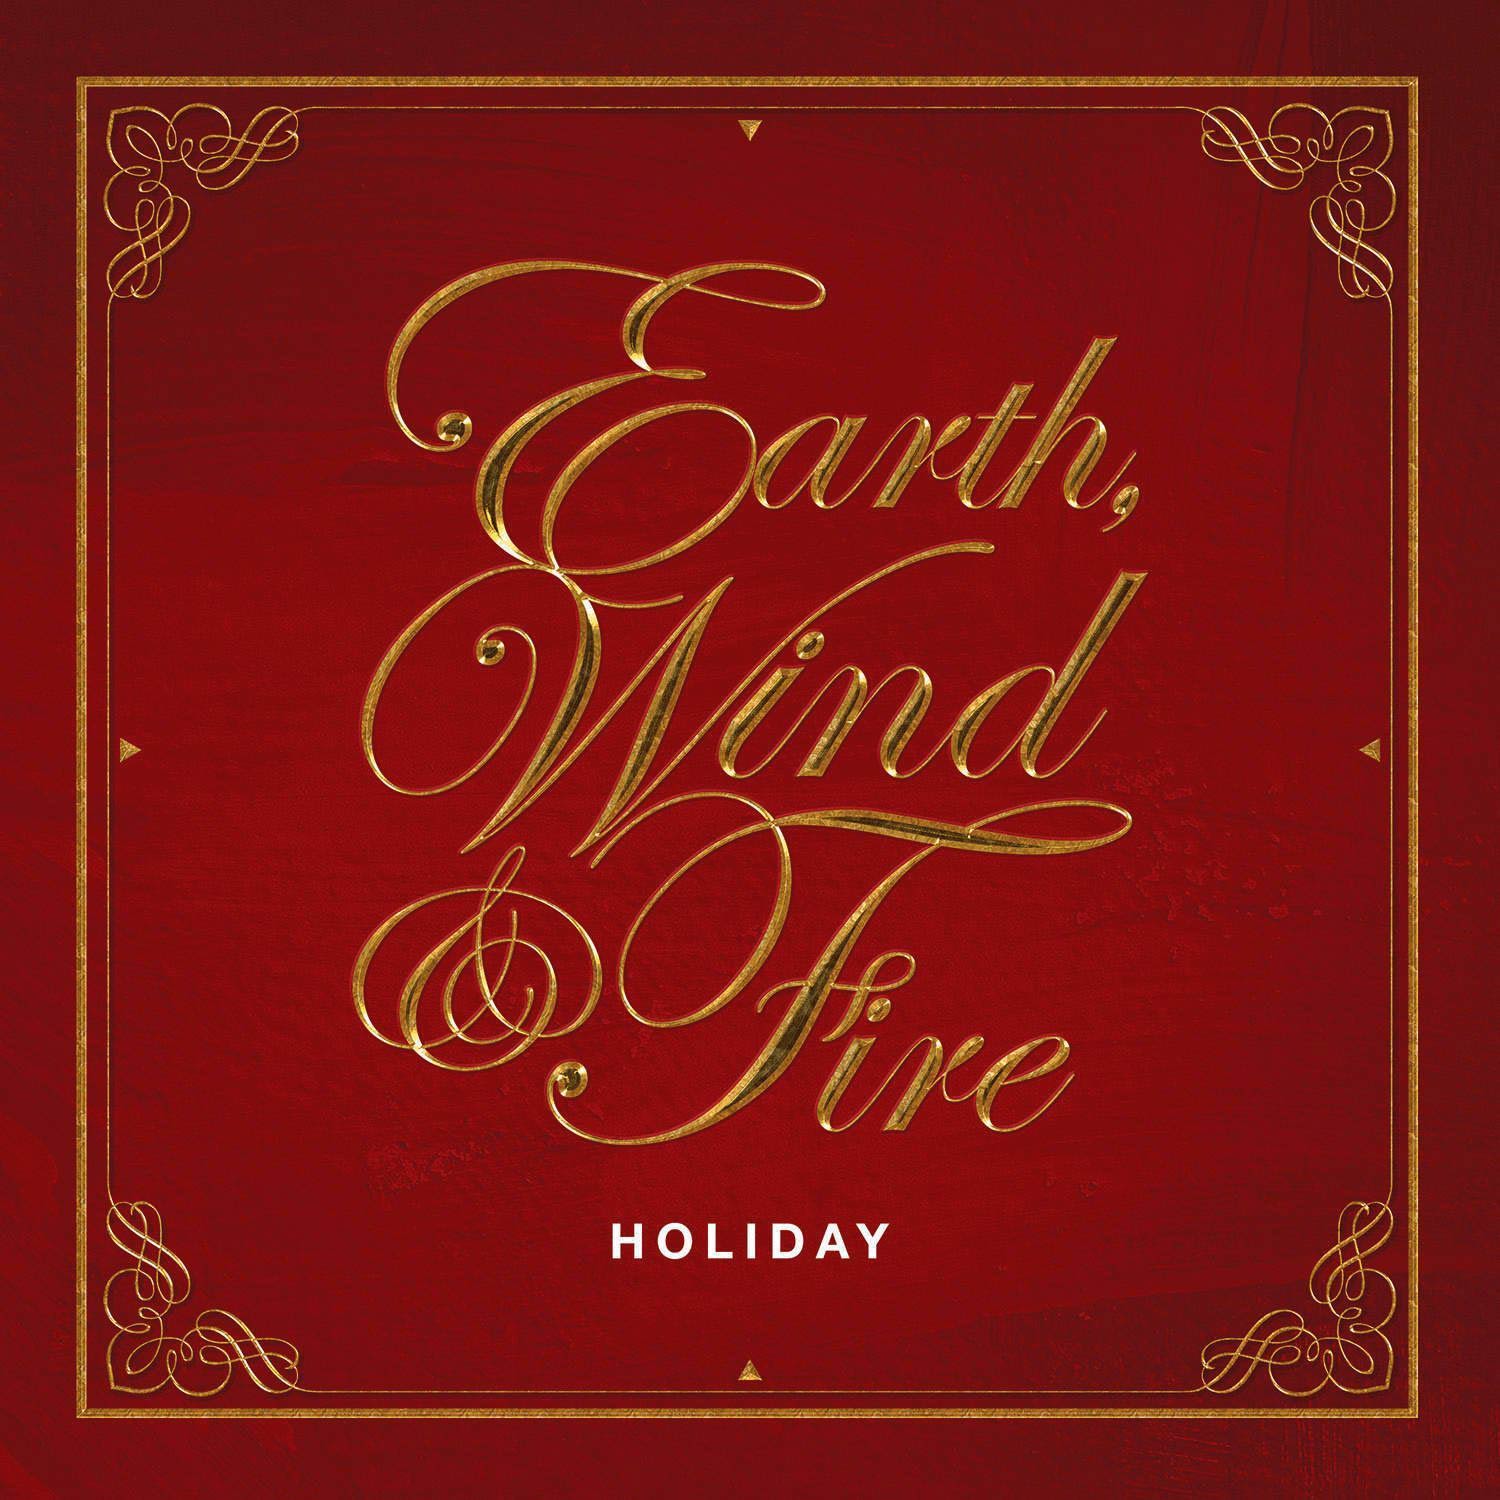 Earth wind & fire: Holiday, la portada del disco